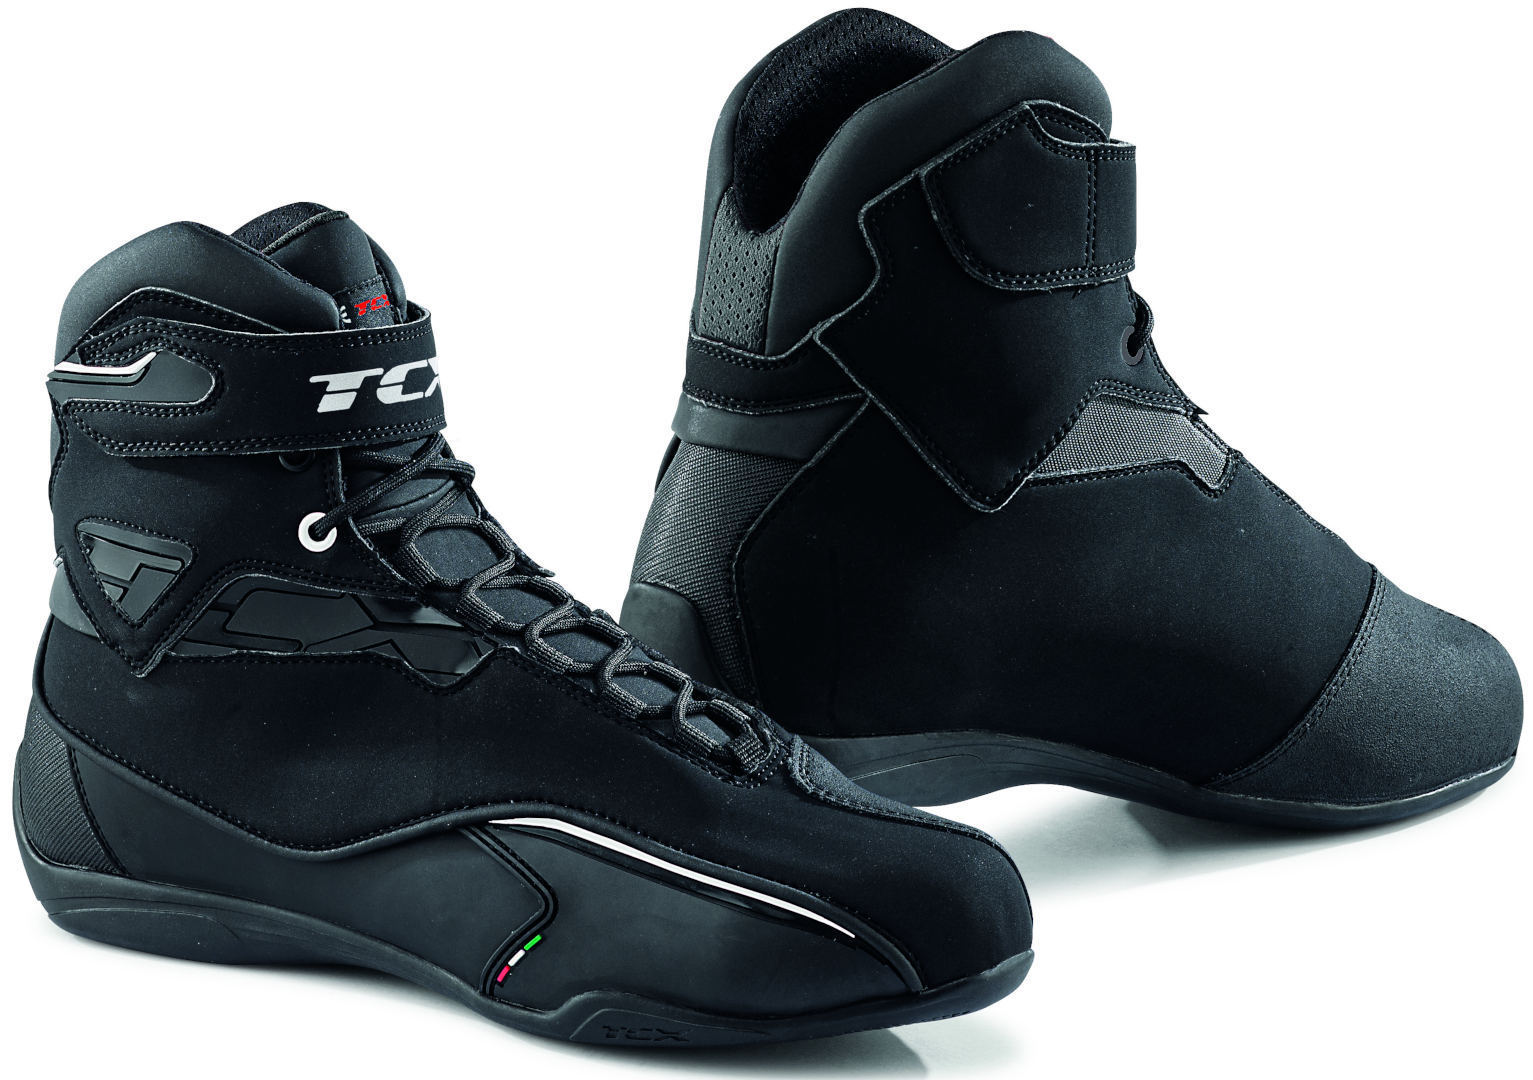 Обувь водонепроницаемая TCX Zeta мотоциклетная, черный цена и фото